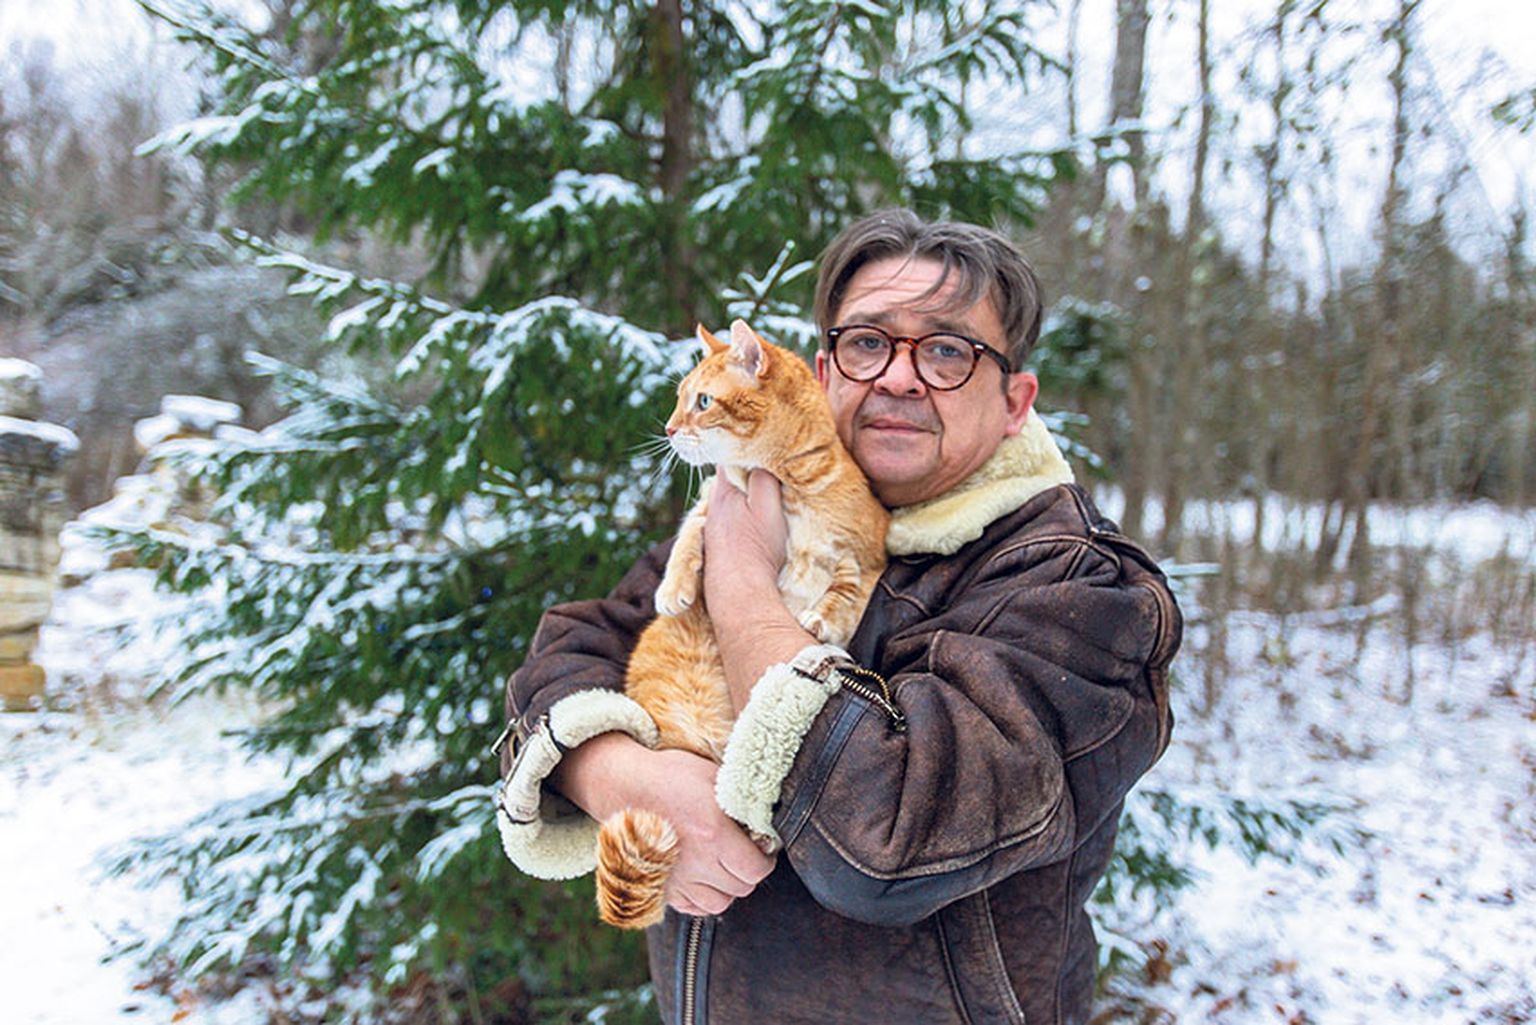 LUMESÕBRAD: Pikalt lumest hoidunud Olavi Antons ja esmakordselt lund näinud kass Mimmi on sellega rahul, et maa on valge. Seda pilti täiendab Johani talu tuledes kuusk.
Foto: RAUL VINNI